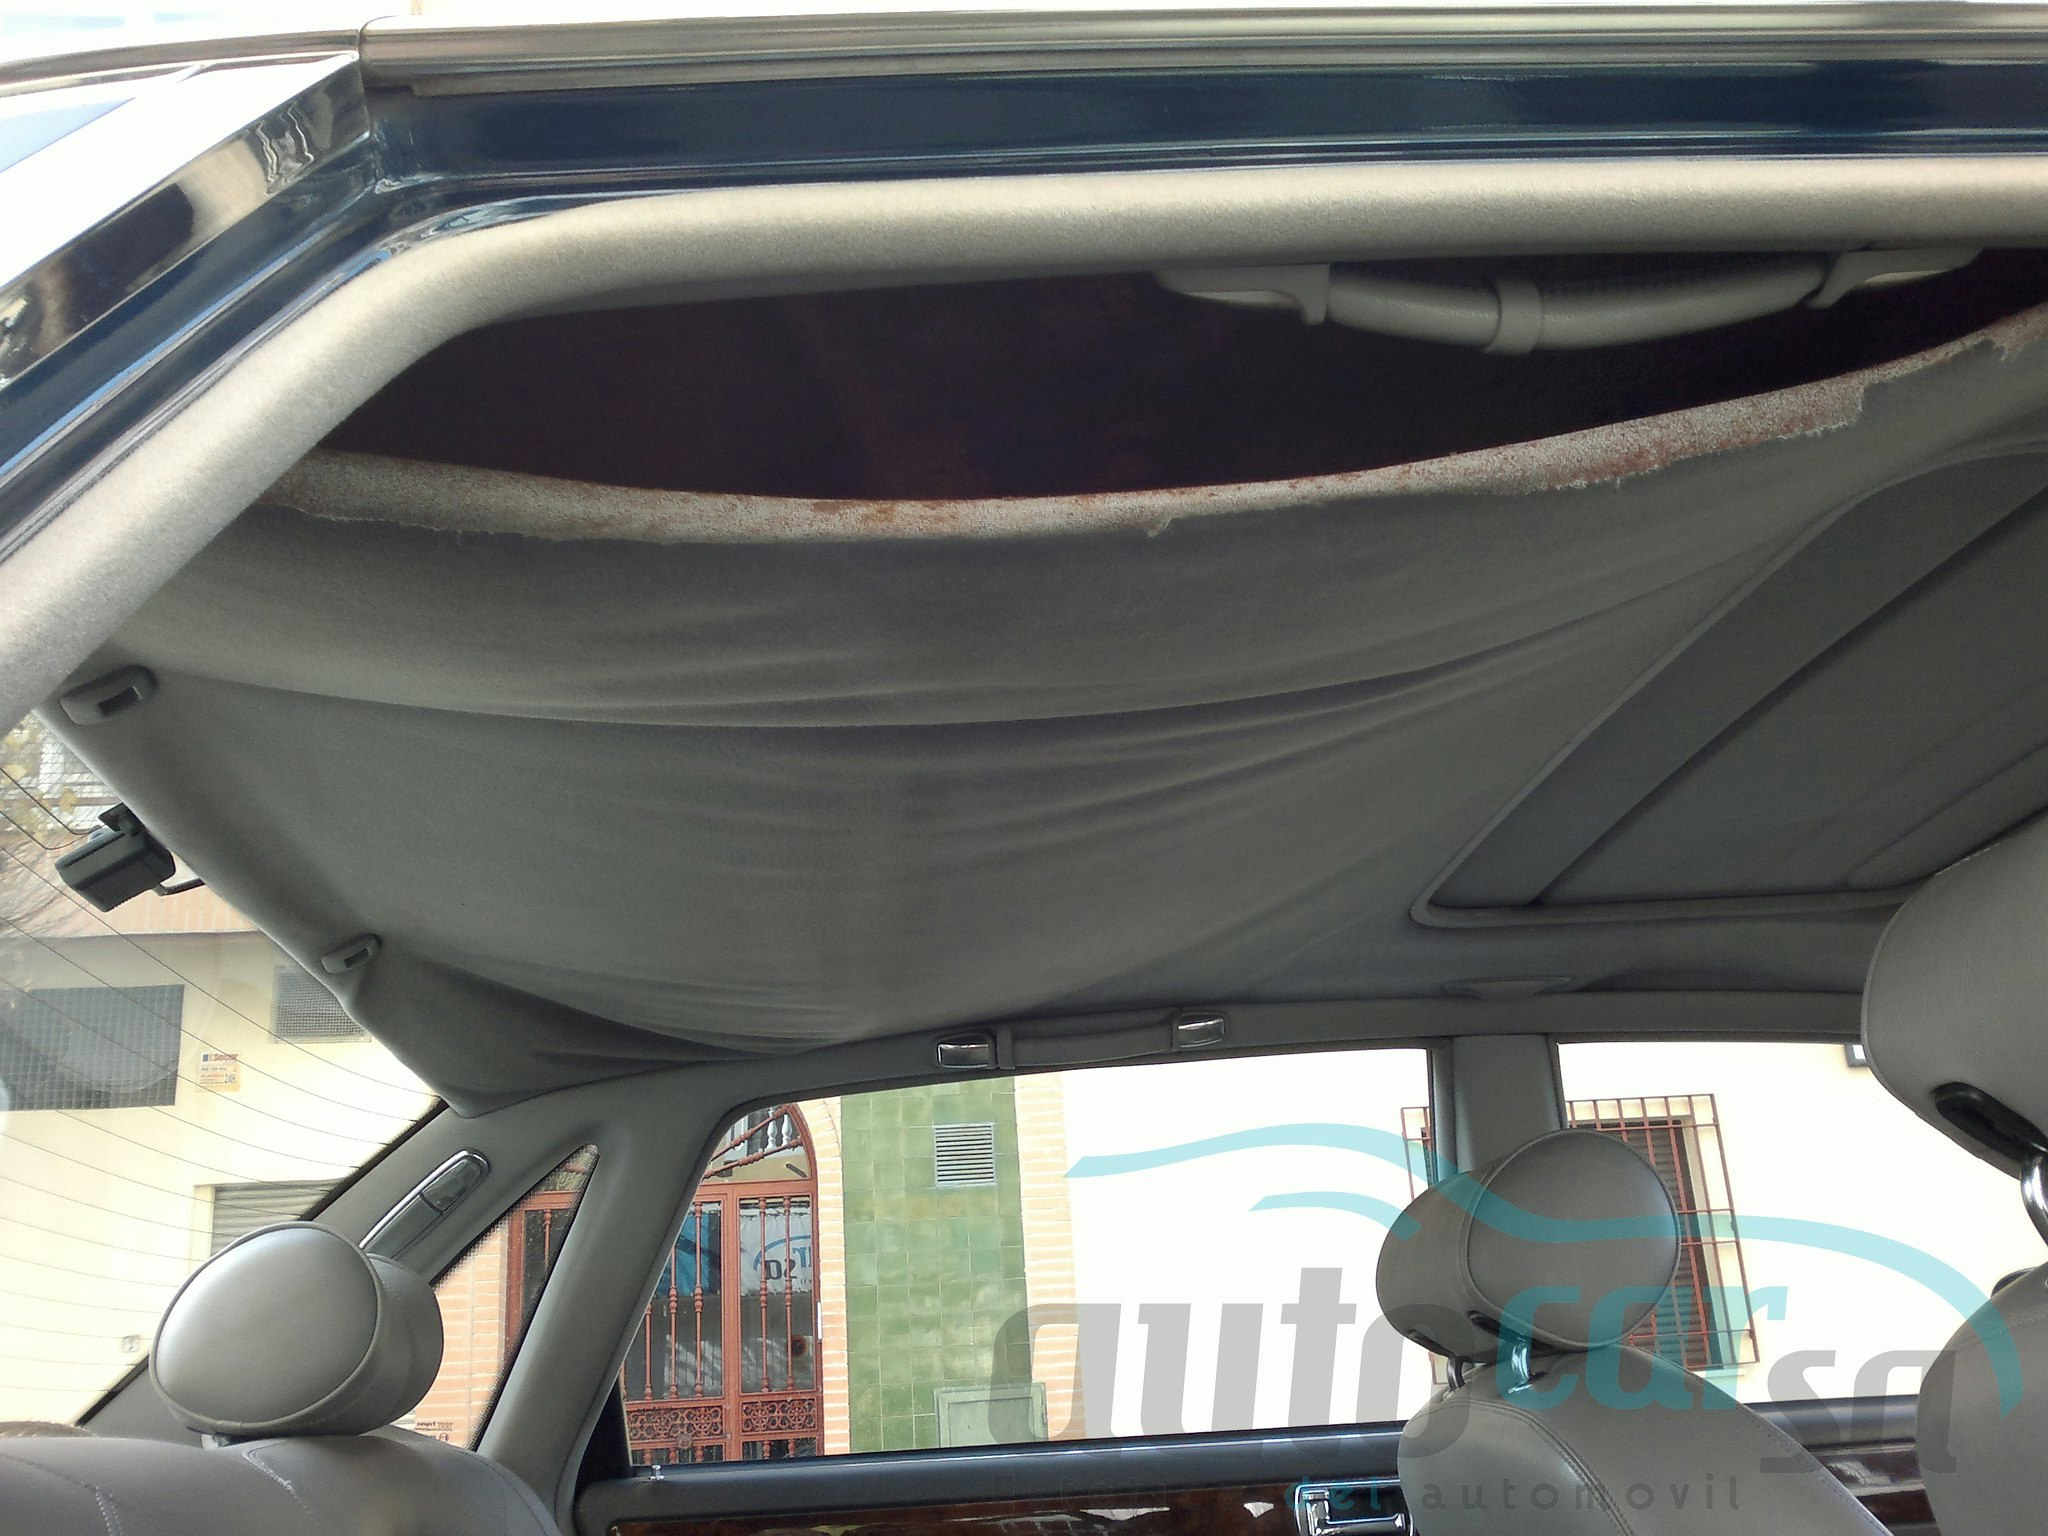 Cómo arreglar el techo del coche cuyo tapizado se ha descolgado